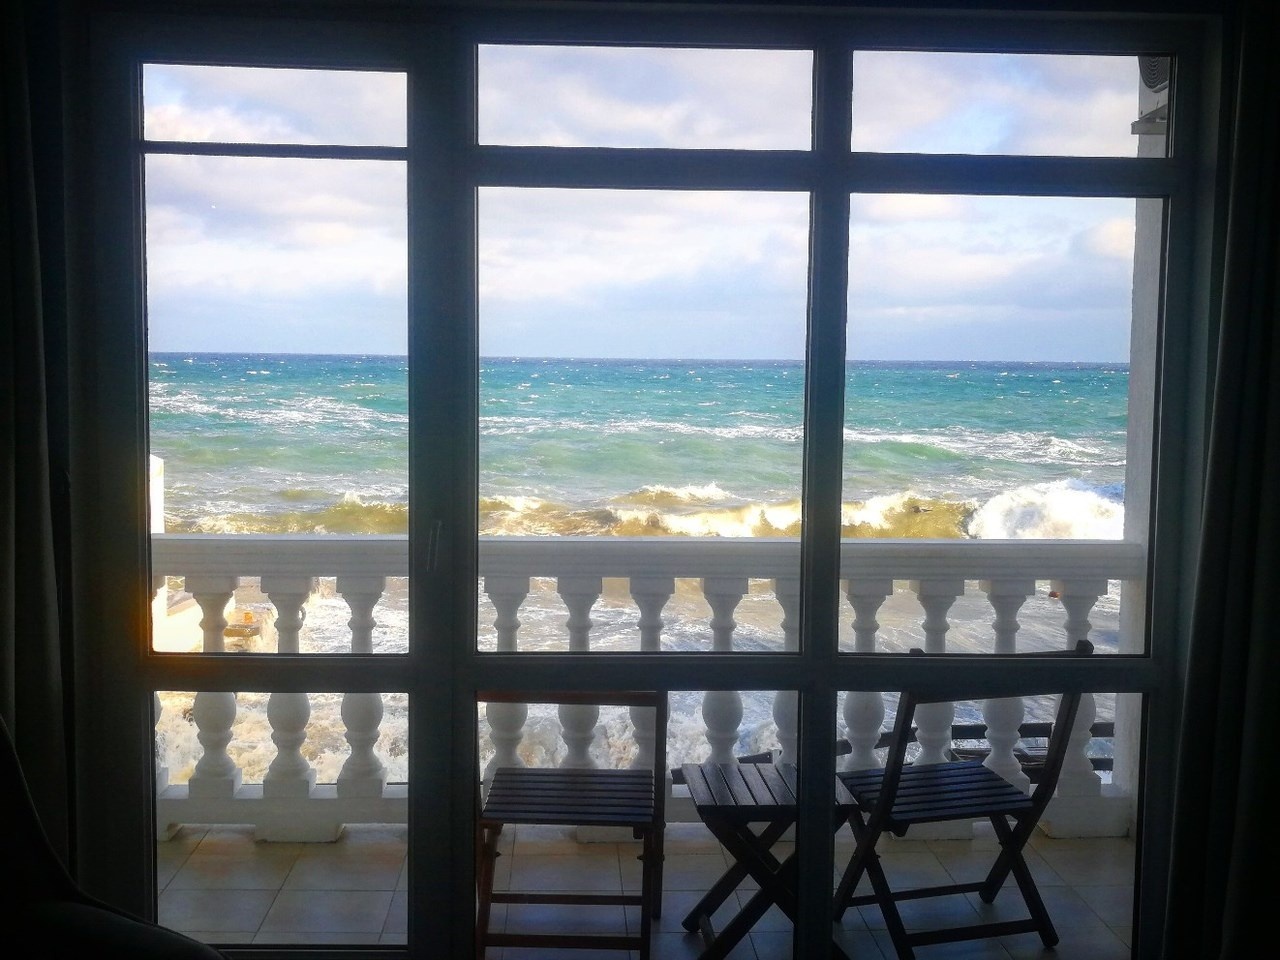  Гостинично-ресторанный комплекс «Санта-Барбара» Республика Крым Номер «Улучшенный» с видом на море, фото 4